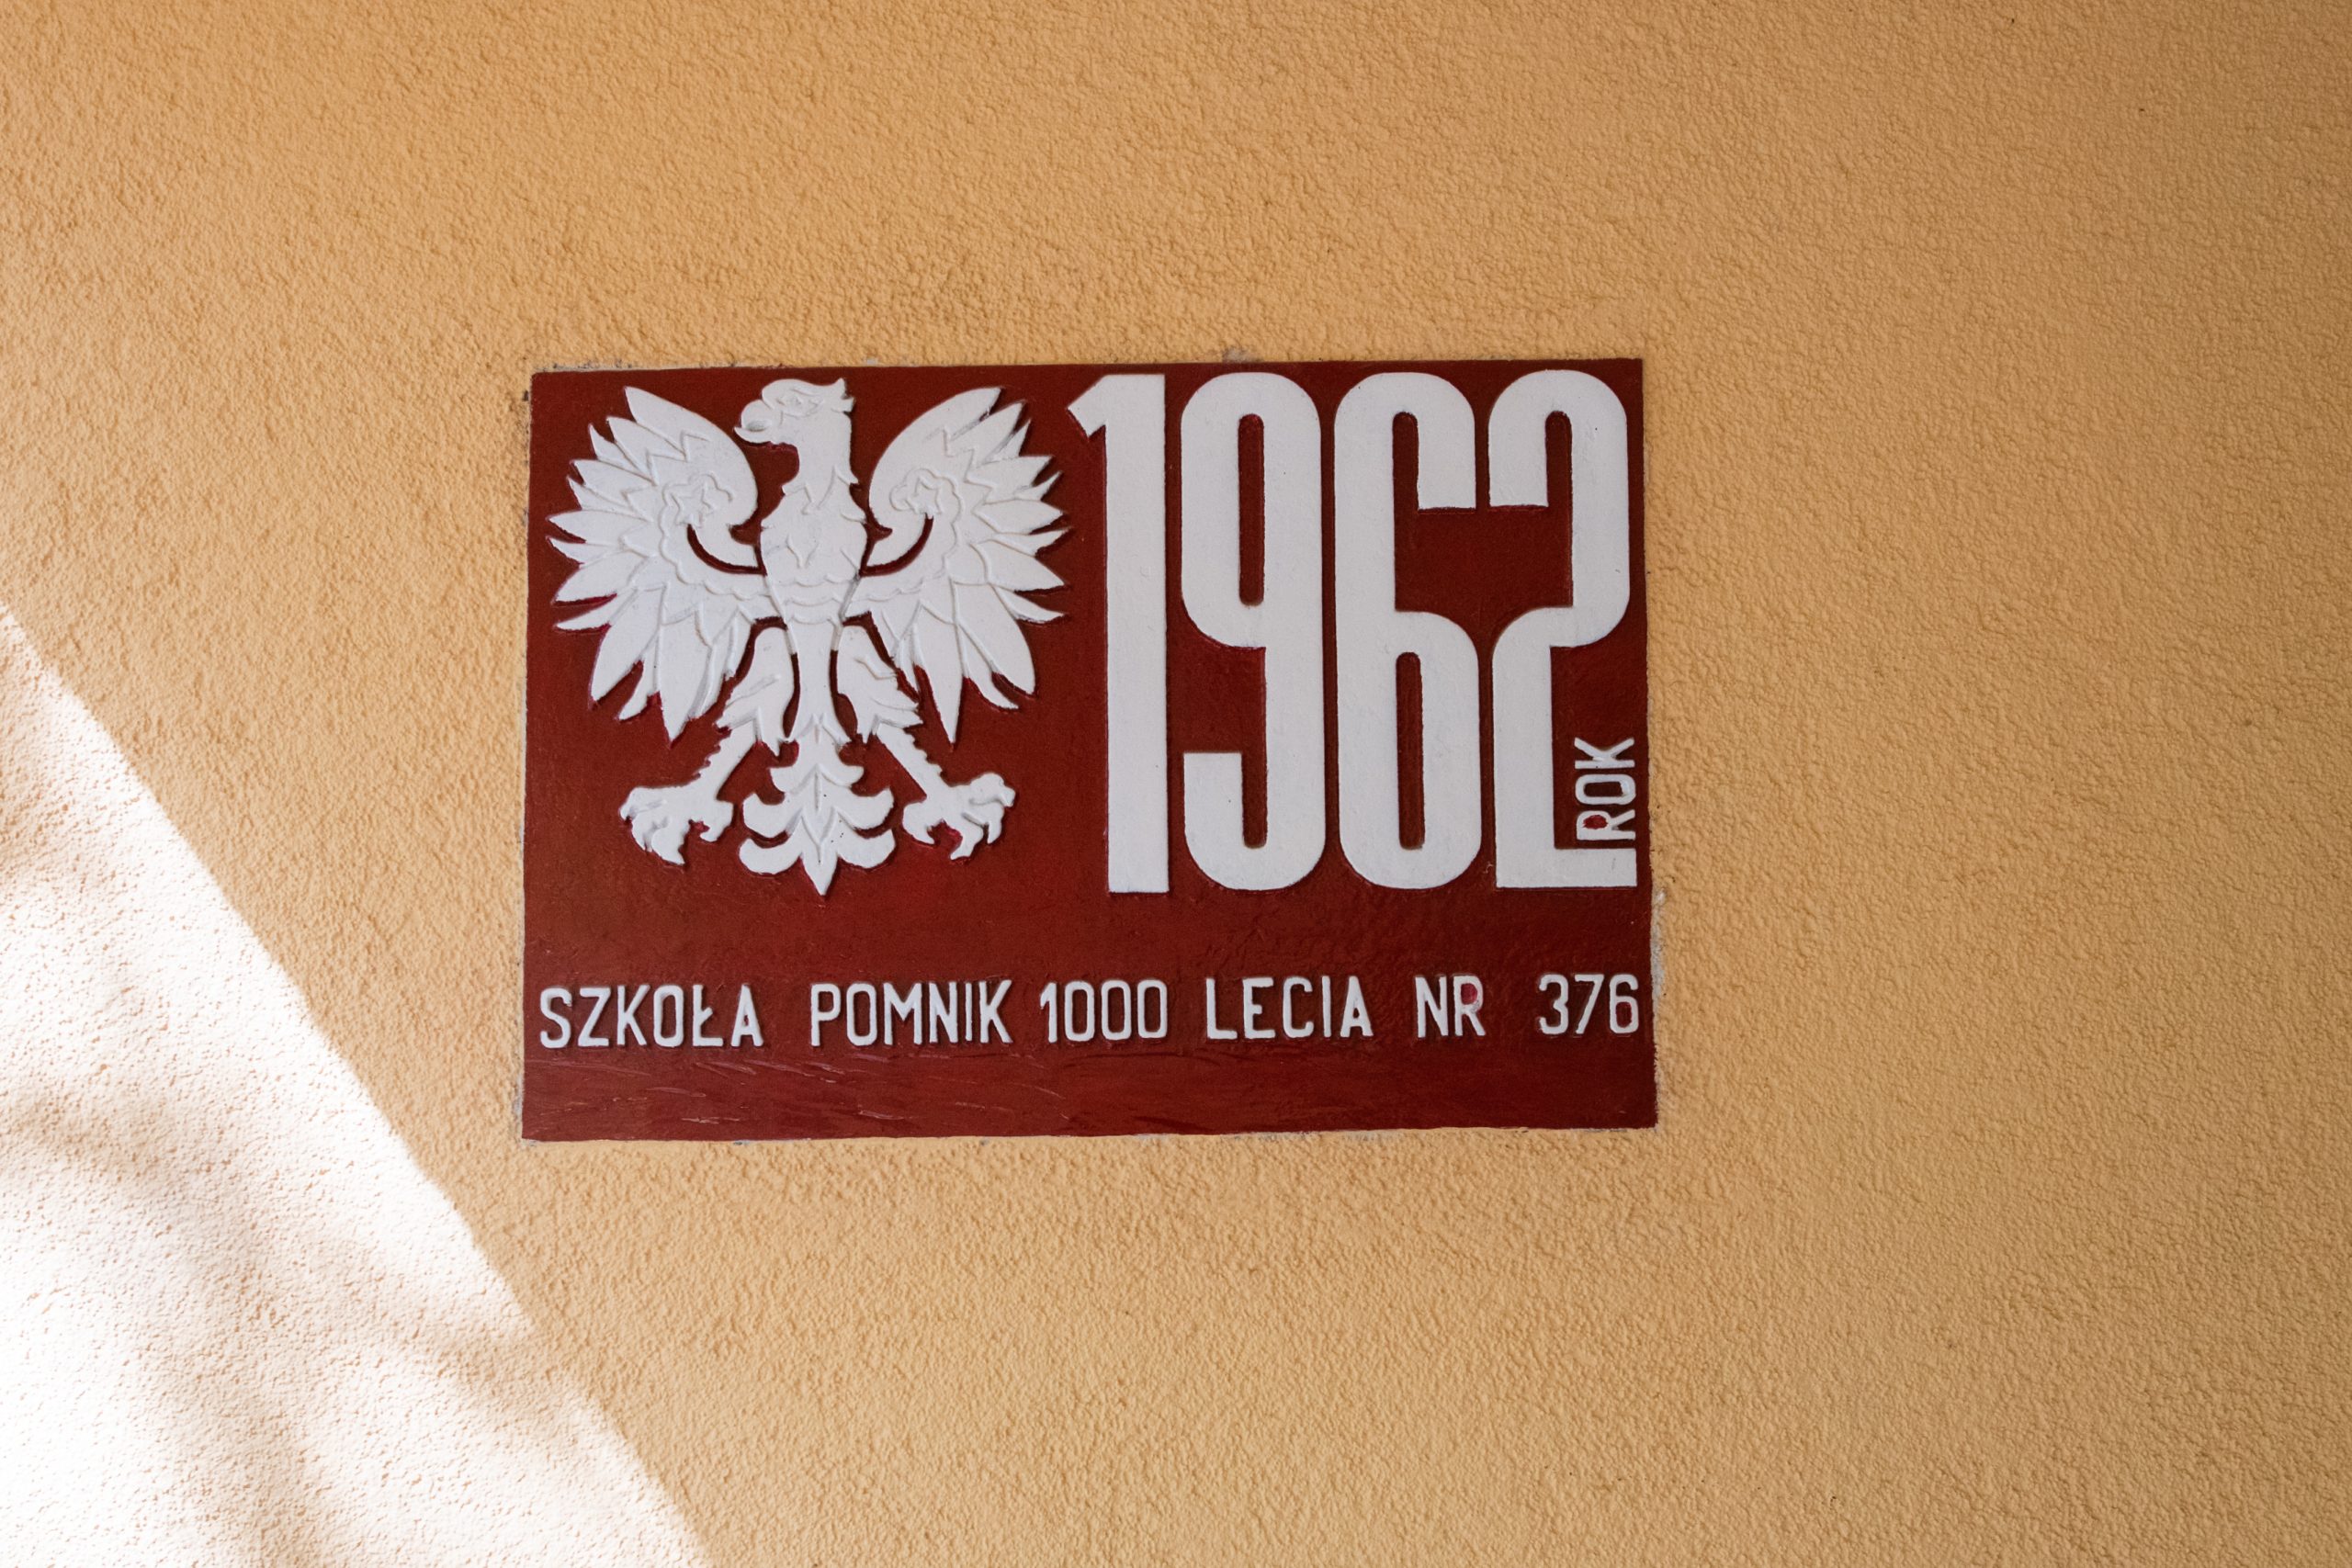 Czerwona tablica przymocowana do żółtej ściany szkoły, na niej napis: 1962 rok Szkoła pomnik 1000-lecia nr 376